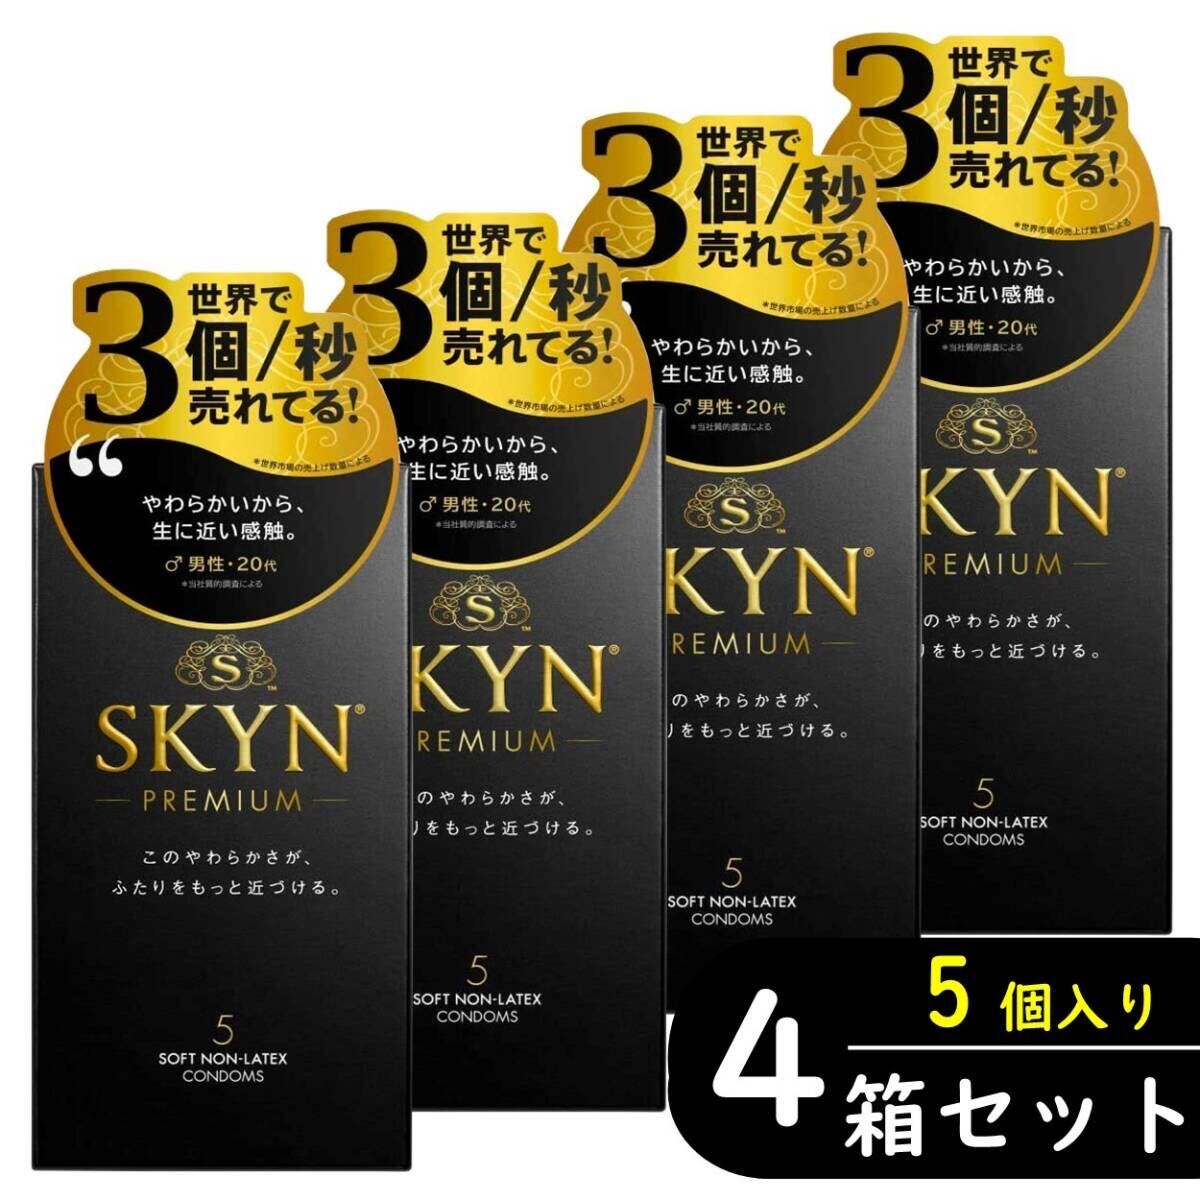 SKYN プレミアム アイアール 5個入り×4箱セット（ゴム スキン 避妊具）